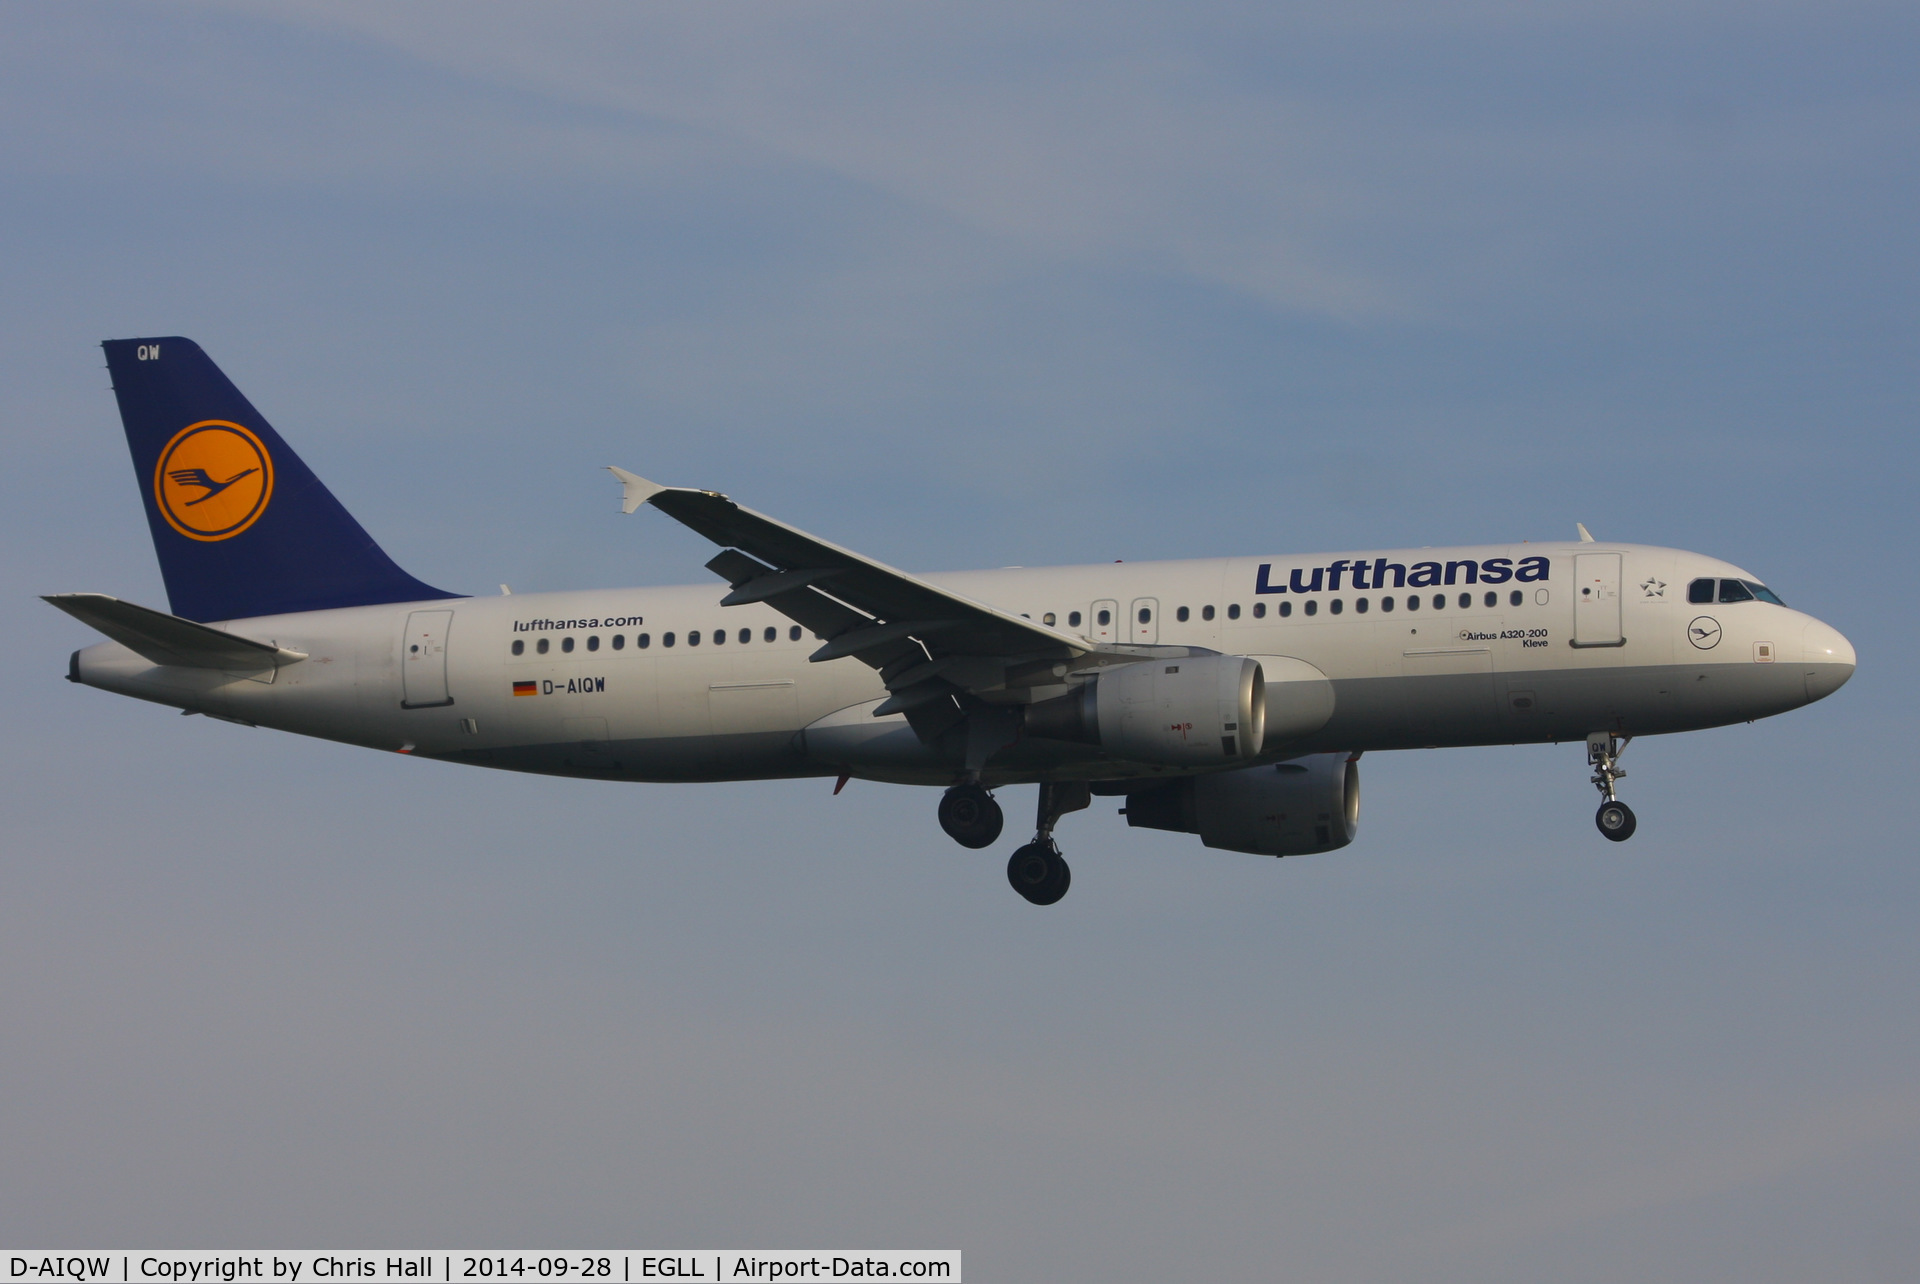 D-AIQW, 2000 Airbus A320-211 C/N 1367, Lufthansa